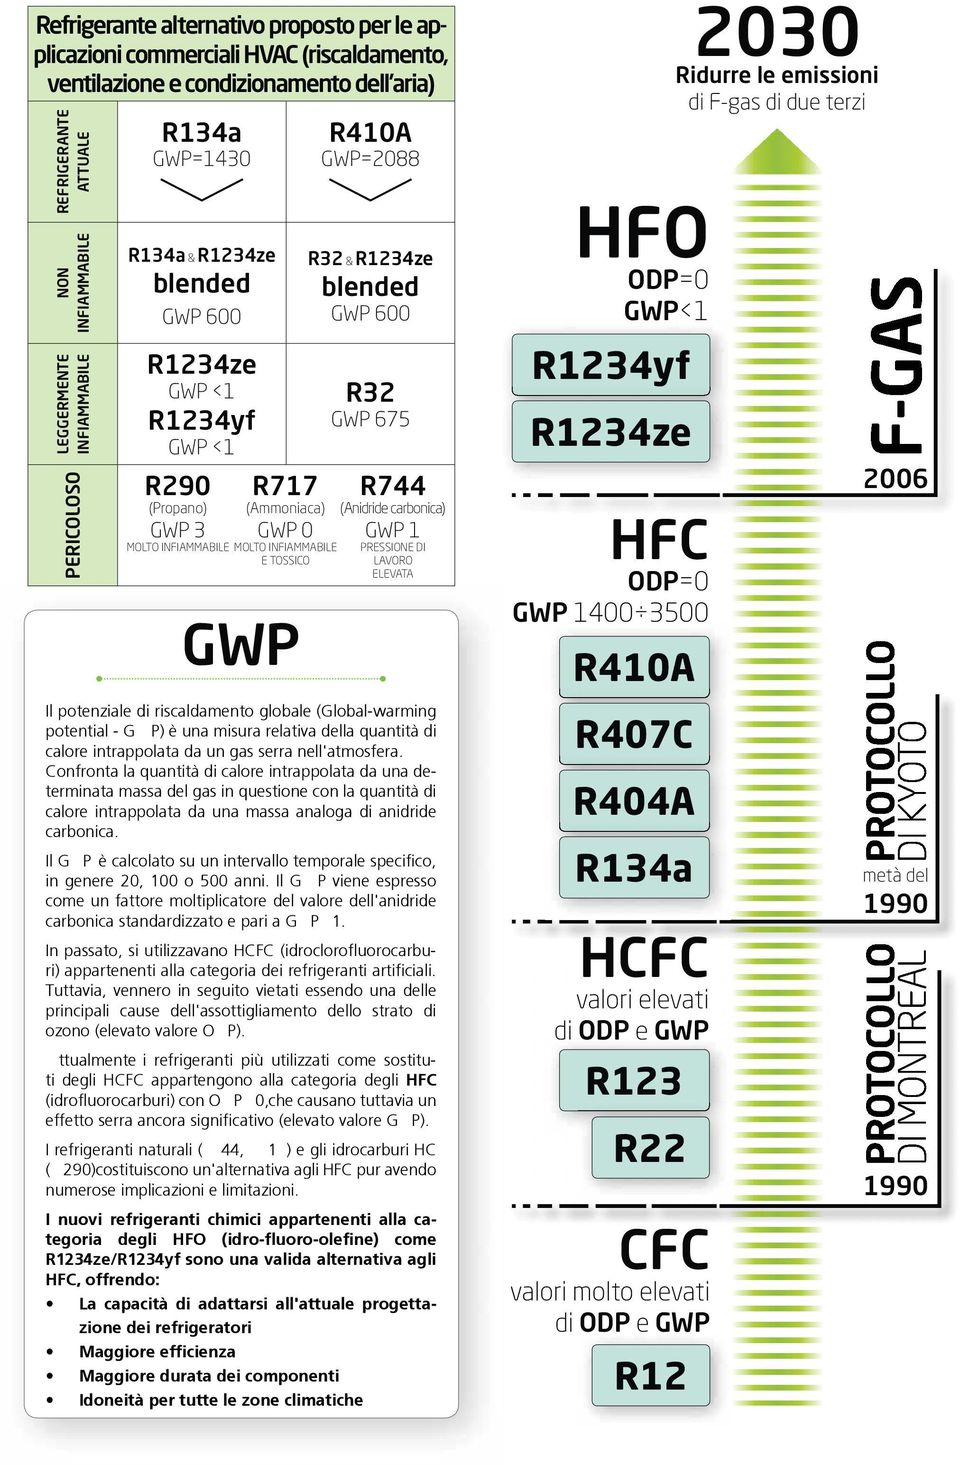 R32 & R1234ze blended GWP 600 R32 GWP 675 R744 (Anidride carbonica) GWP 1 PRESSIONE DI LAVORO ELEVATA Il potenziale di riscaldamento globale (Global-warming potential - G P) è una misura relativa